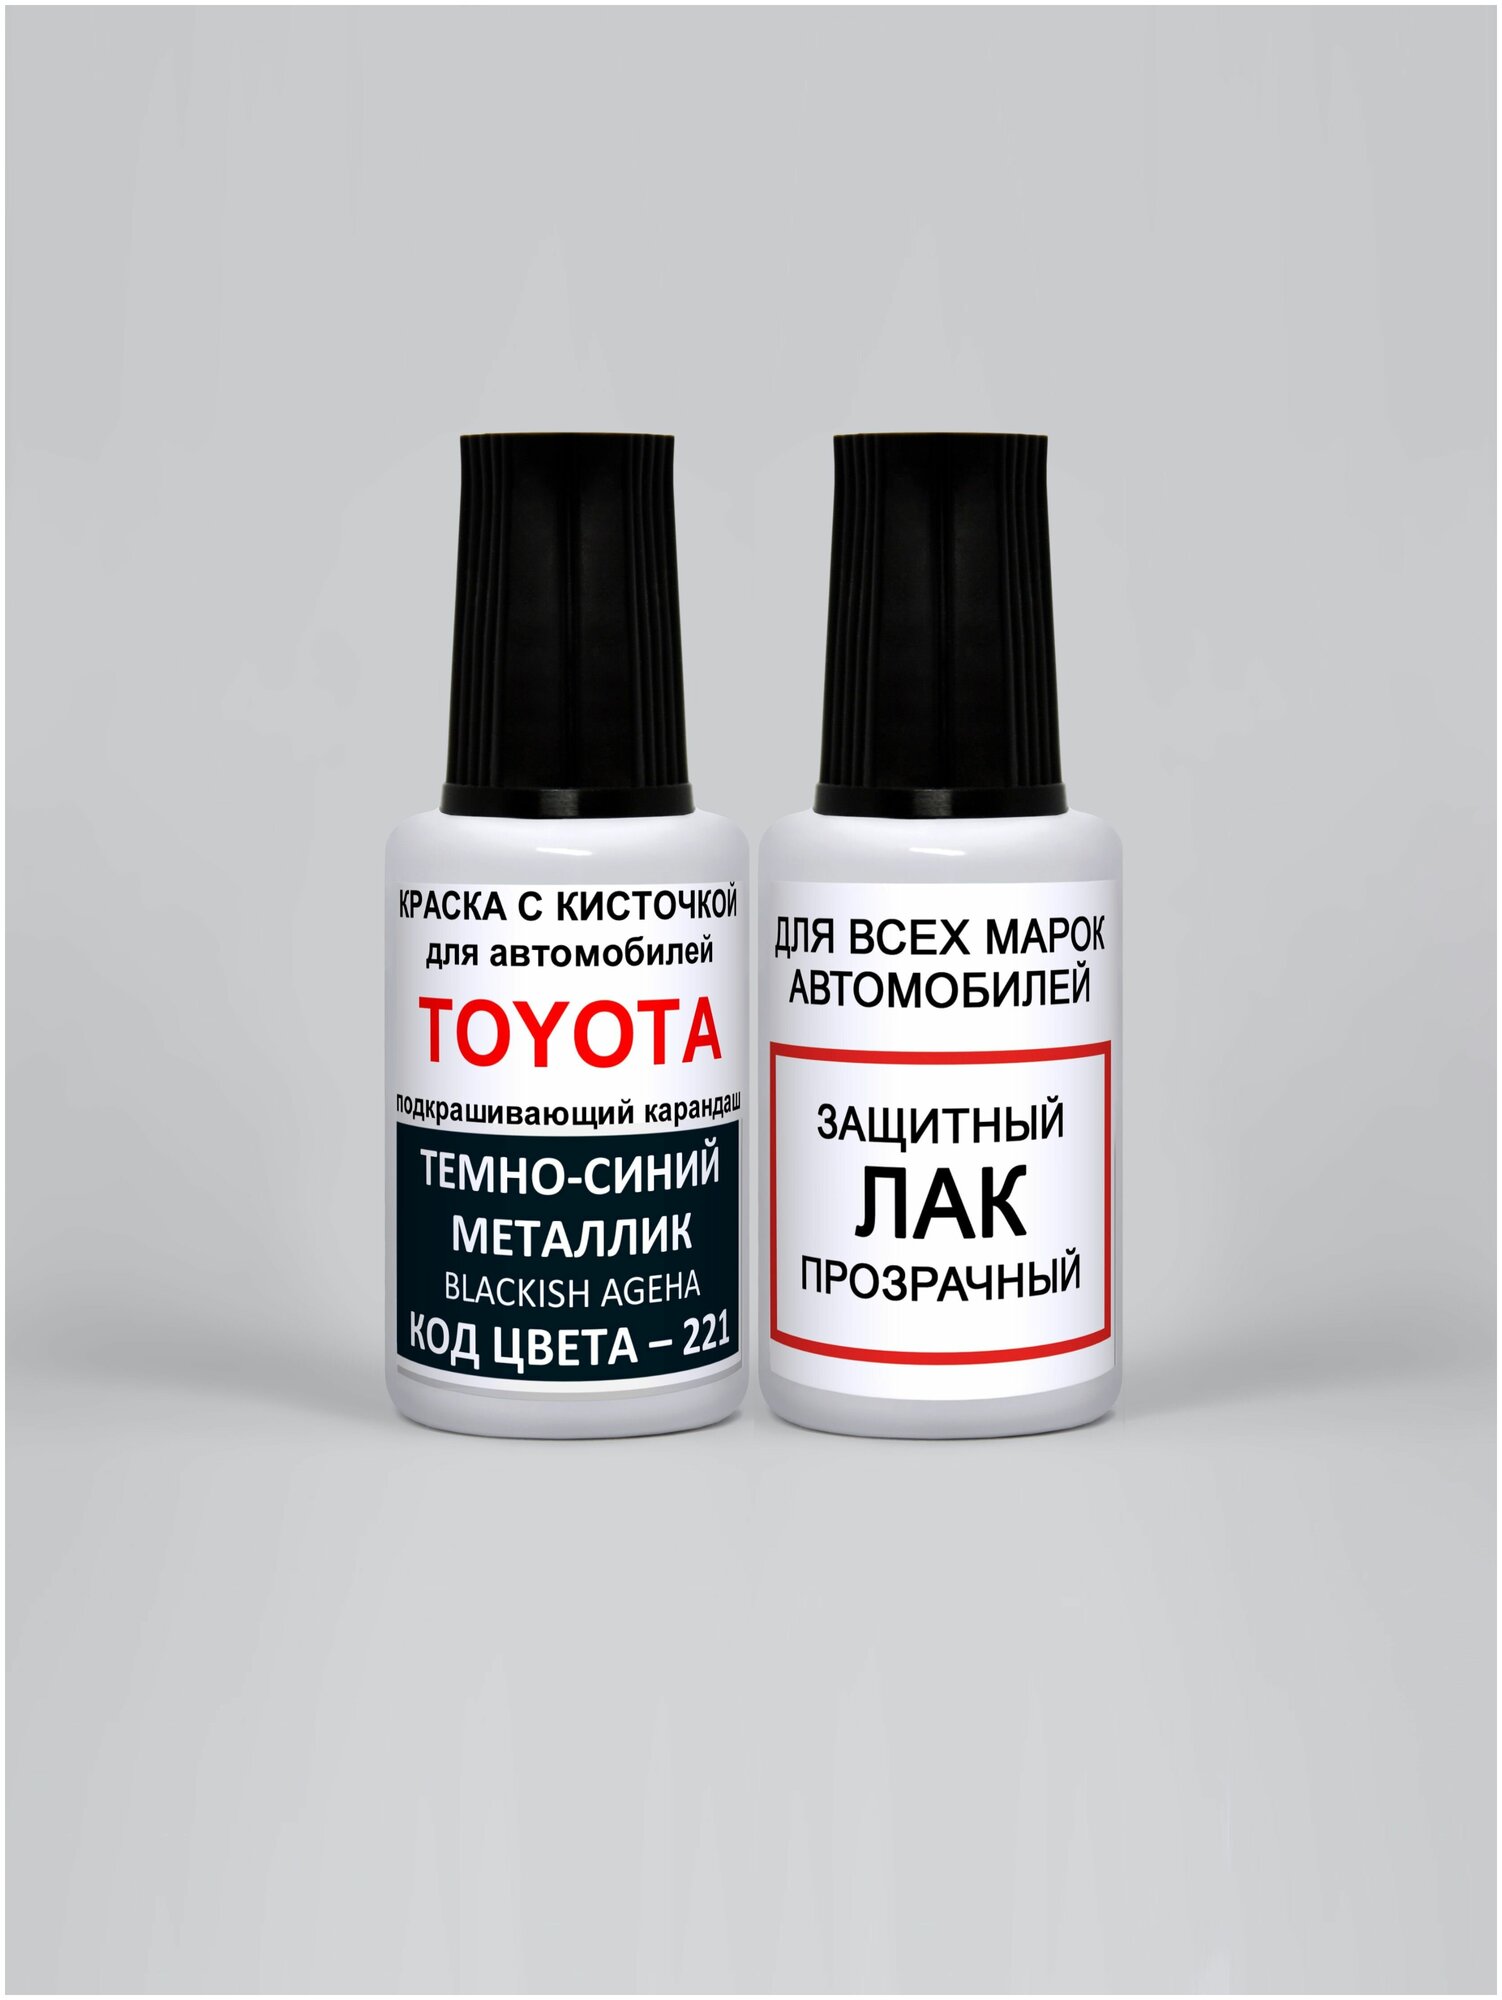 Набор для подкраски 221 для Toyota Темно-синий металлик Blackish Ageha краска+лак 2 предмета